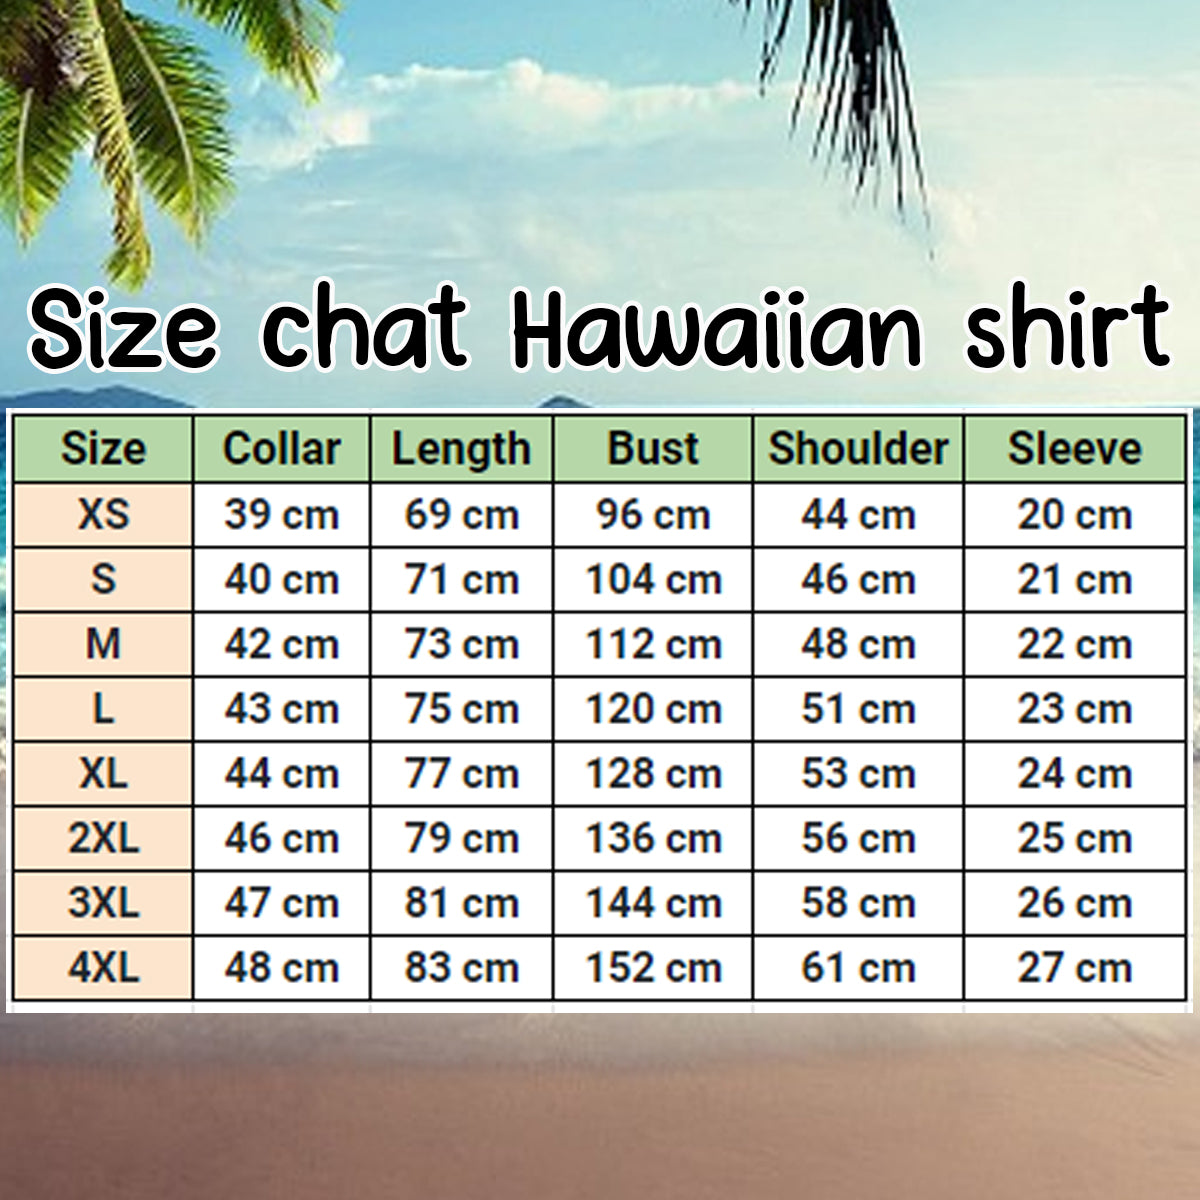 Coconut Tree Printed Casual Breathable Hawaiian Short Sleeve Shirt/ Hawaiian shirt vintage/ Hawaiian shirt for men/ Women